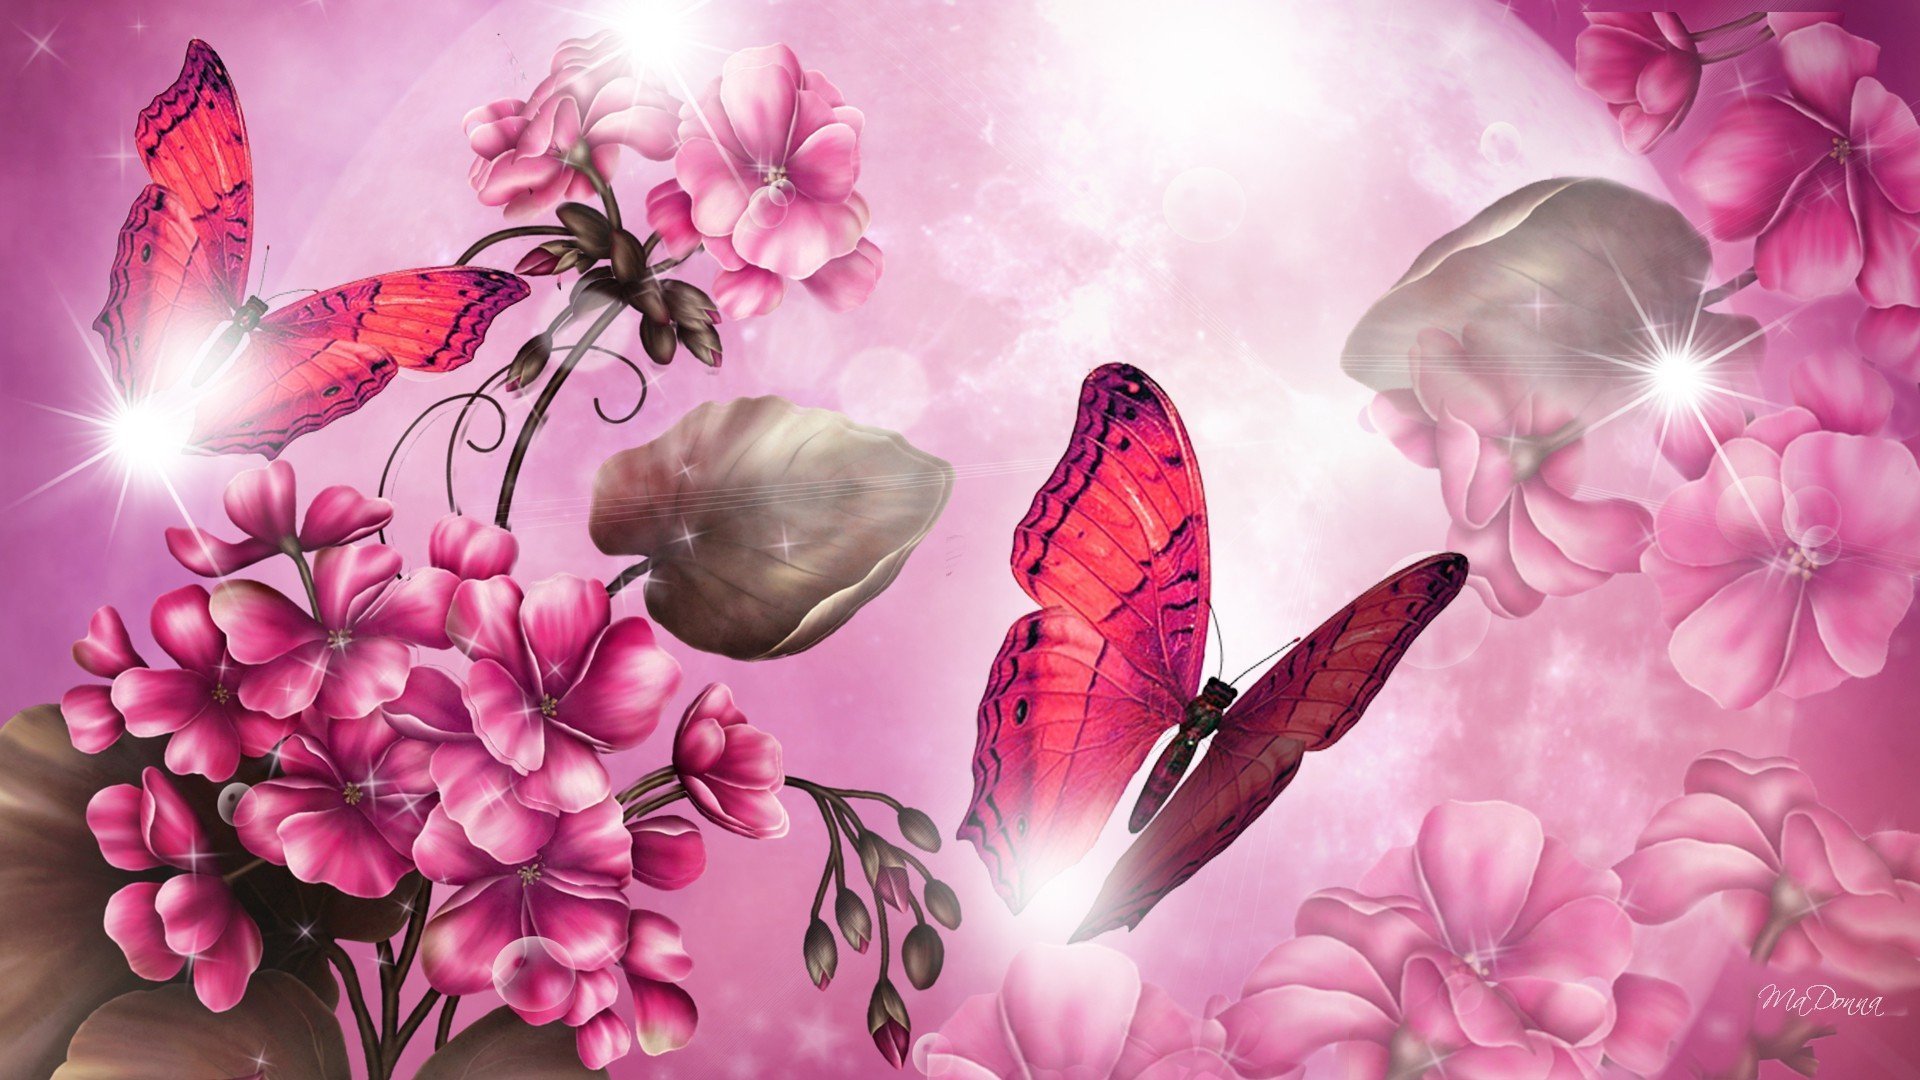 Фон на телефон красивые цветы. Фон бабочки. Розовые бабочки. Бабочка на цветке. Фотообои с бабочками и цветами.